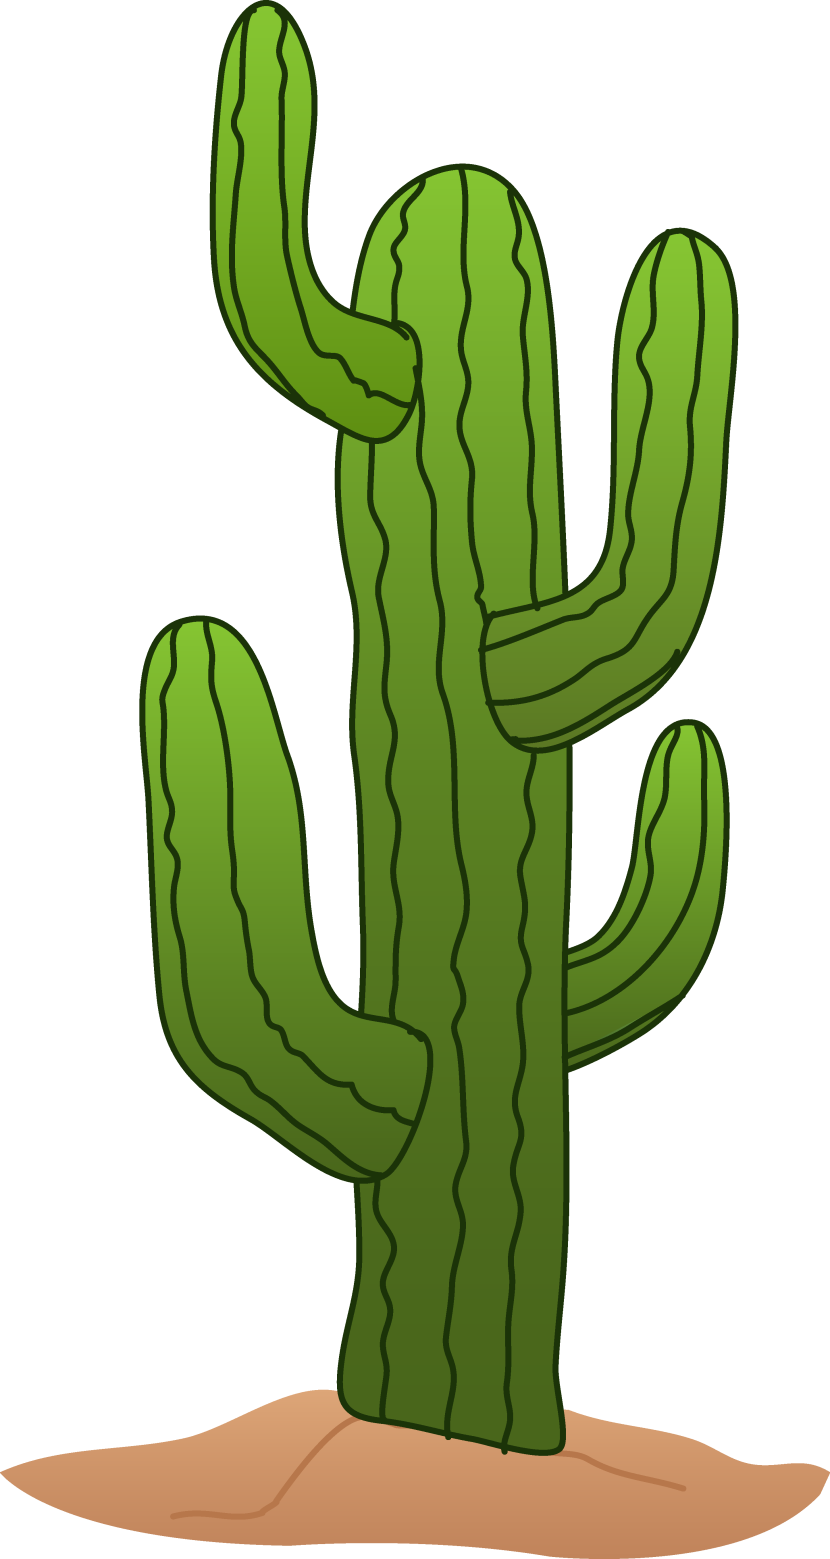 Cactus clip art at clker vector clip art 2.